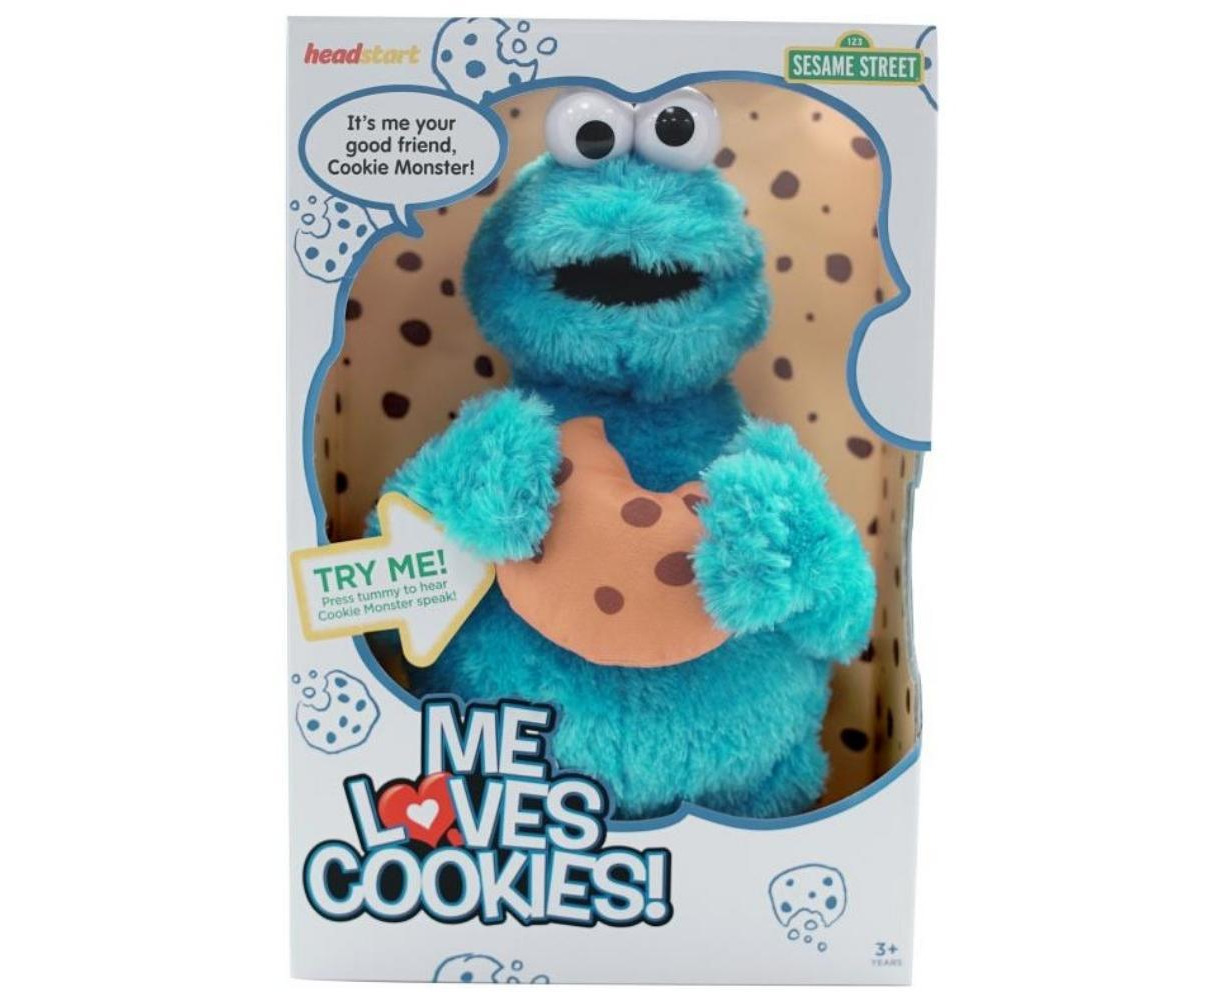 Sesame Street Cookie Loves Cookies | Www.catch.com.au, www.catch.com.au